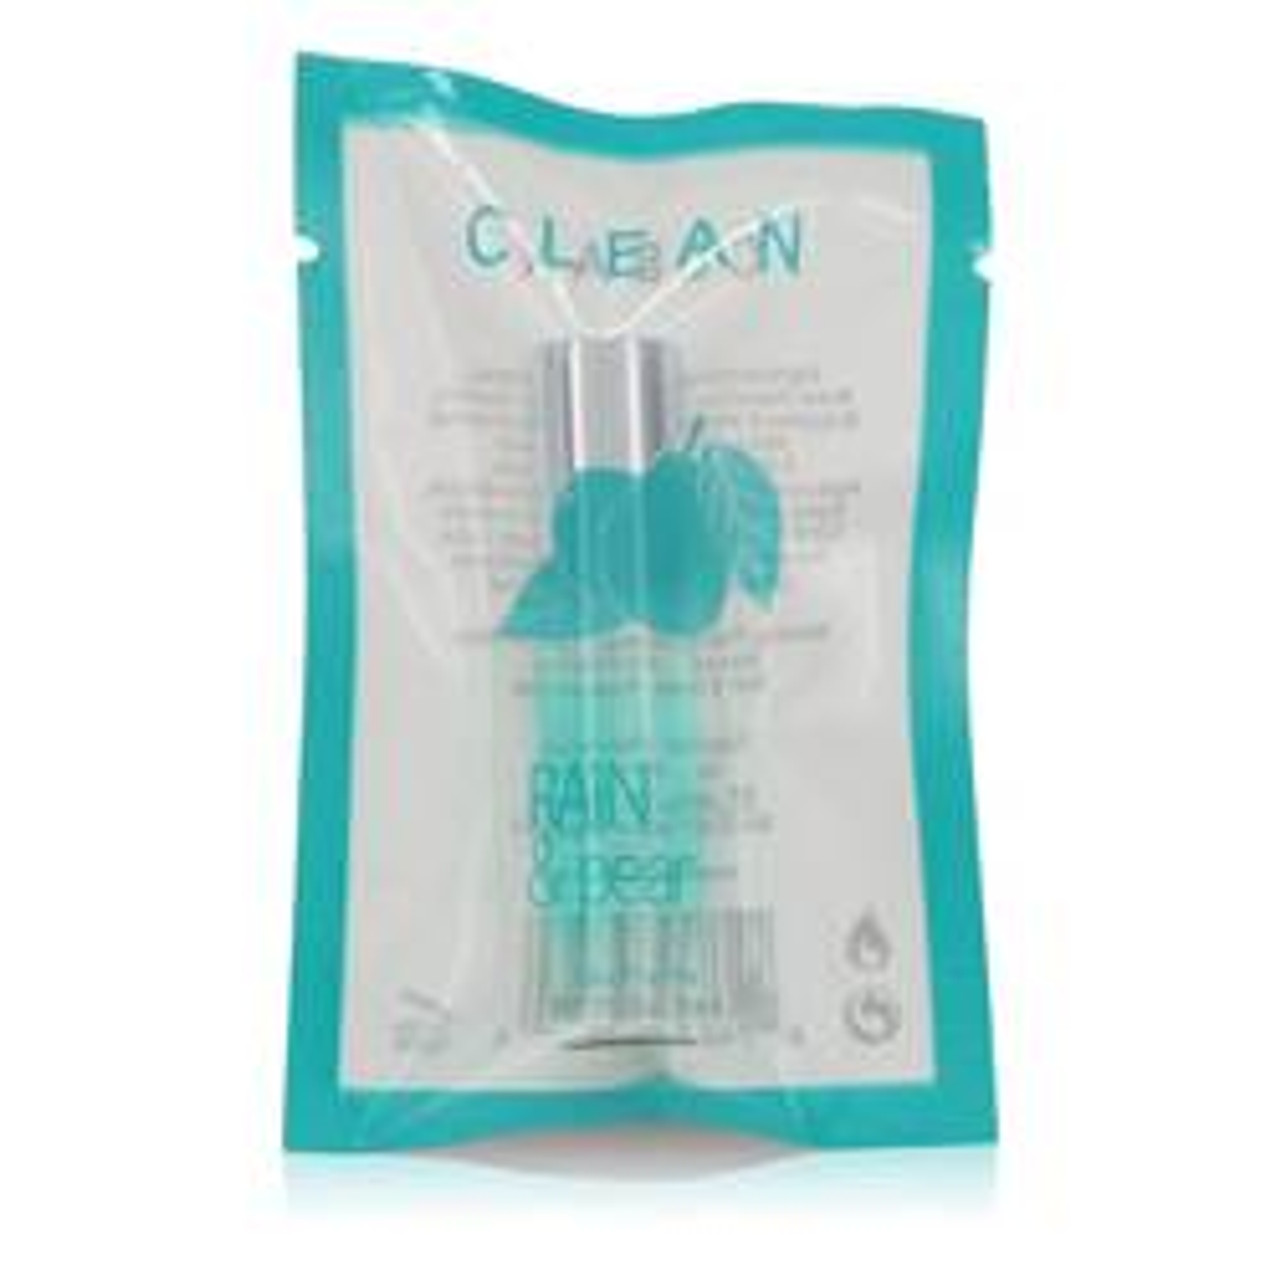 Clean Rain & Pear Perfume By Clean Mini Eau Fraiche 0.17 oz for Women - *Pre-Order